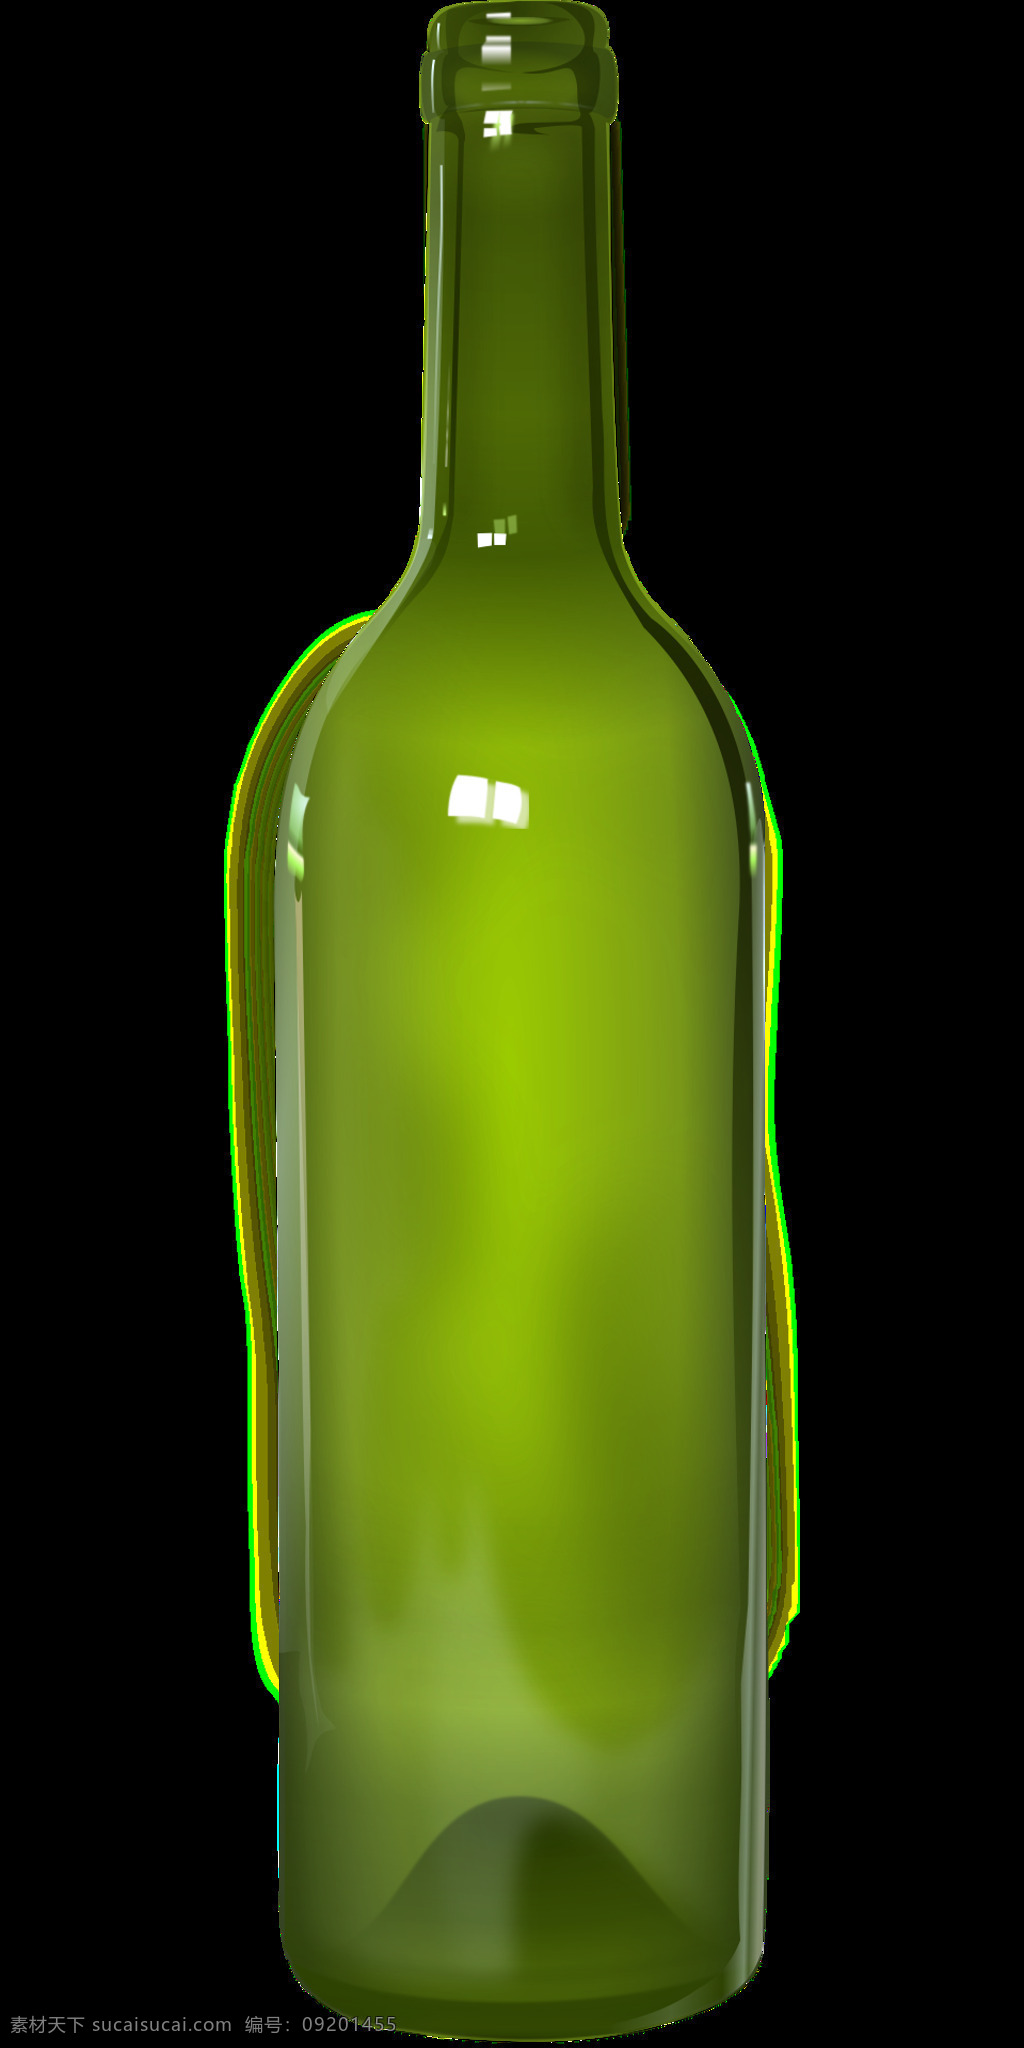 免抠红酒瓶 瓶 详细 玻璃 光 光明和黑暗 免抠 红酒瓶 样机 包装